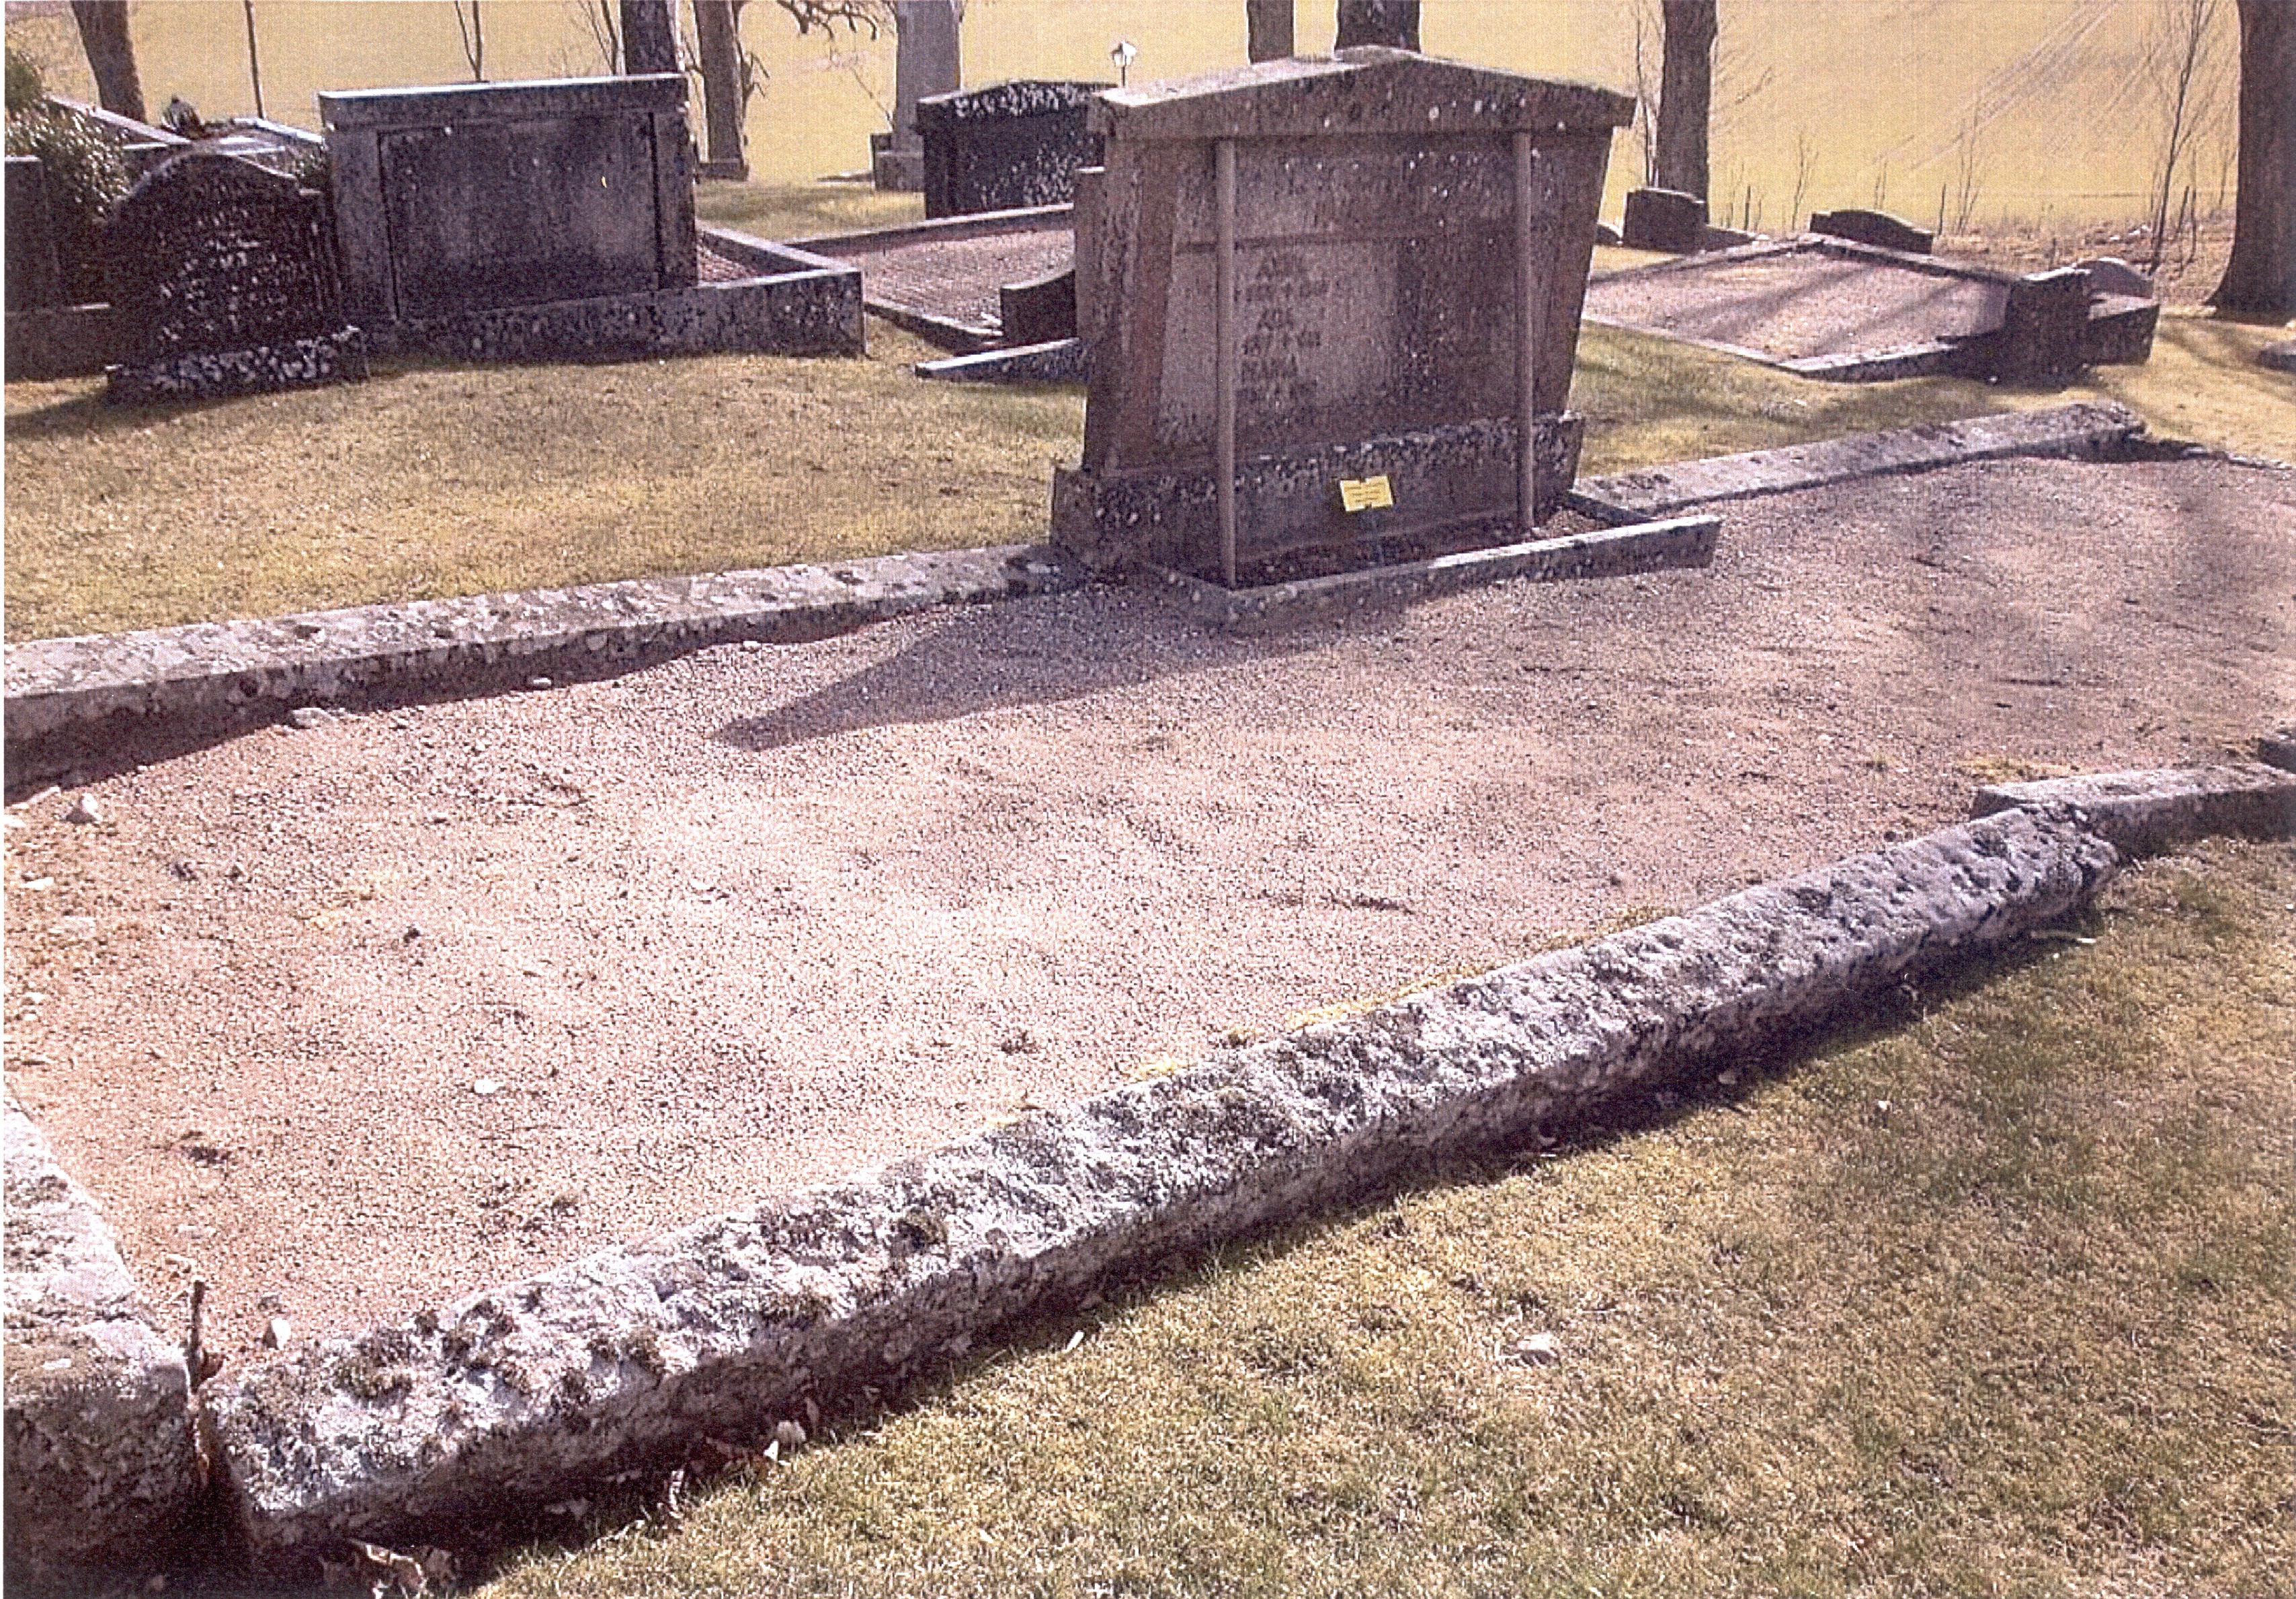 Graven innan restaurering